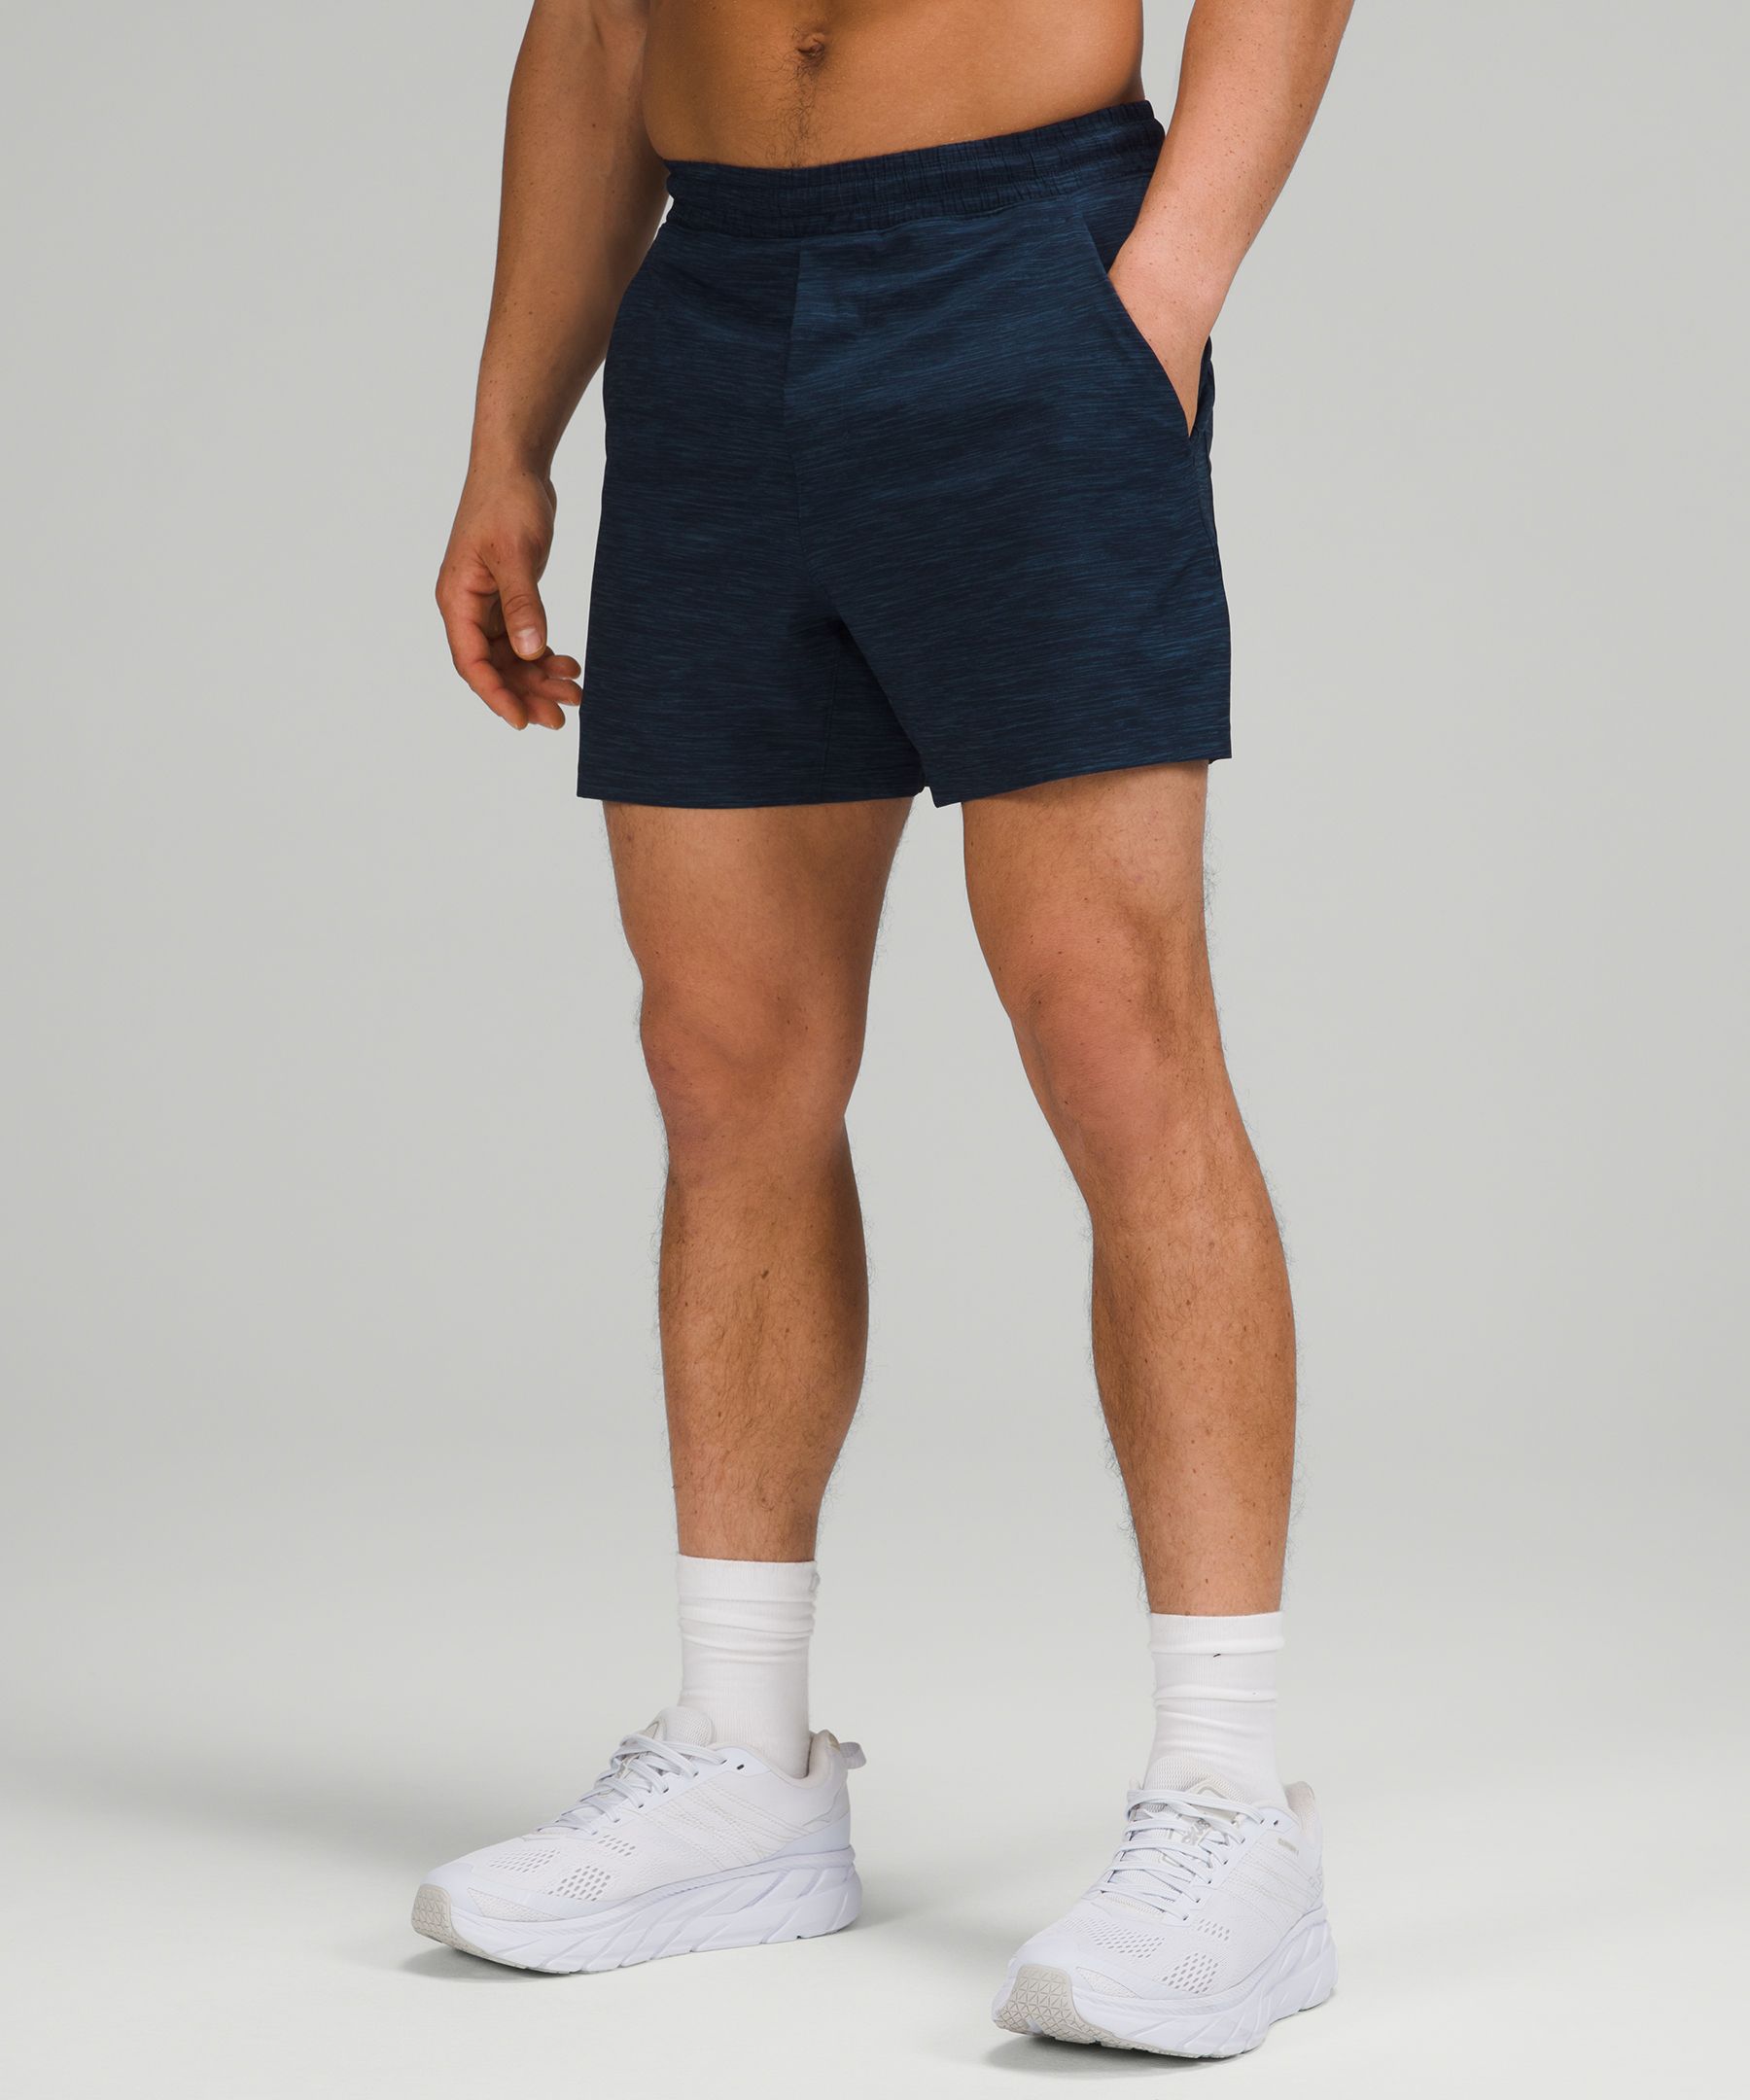 lululemon men's gym shorts